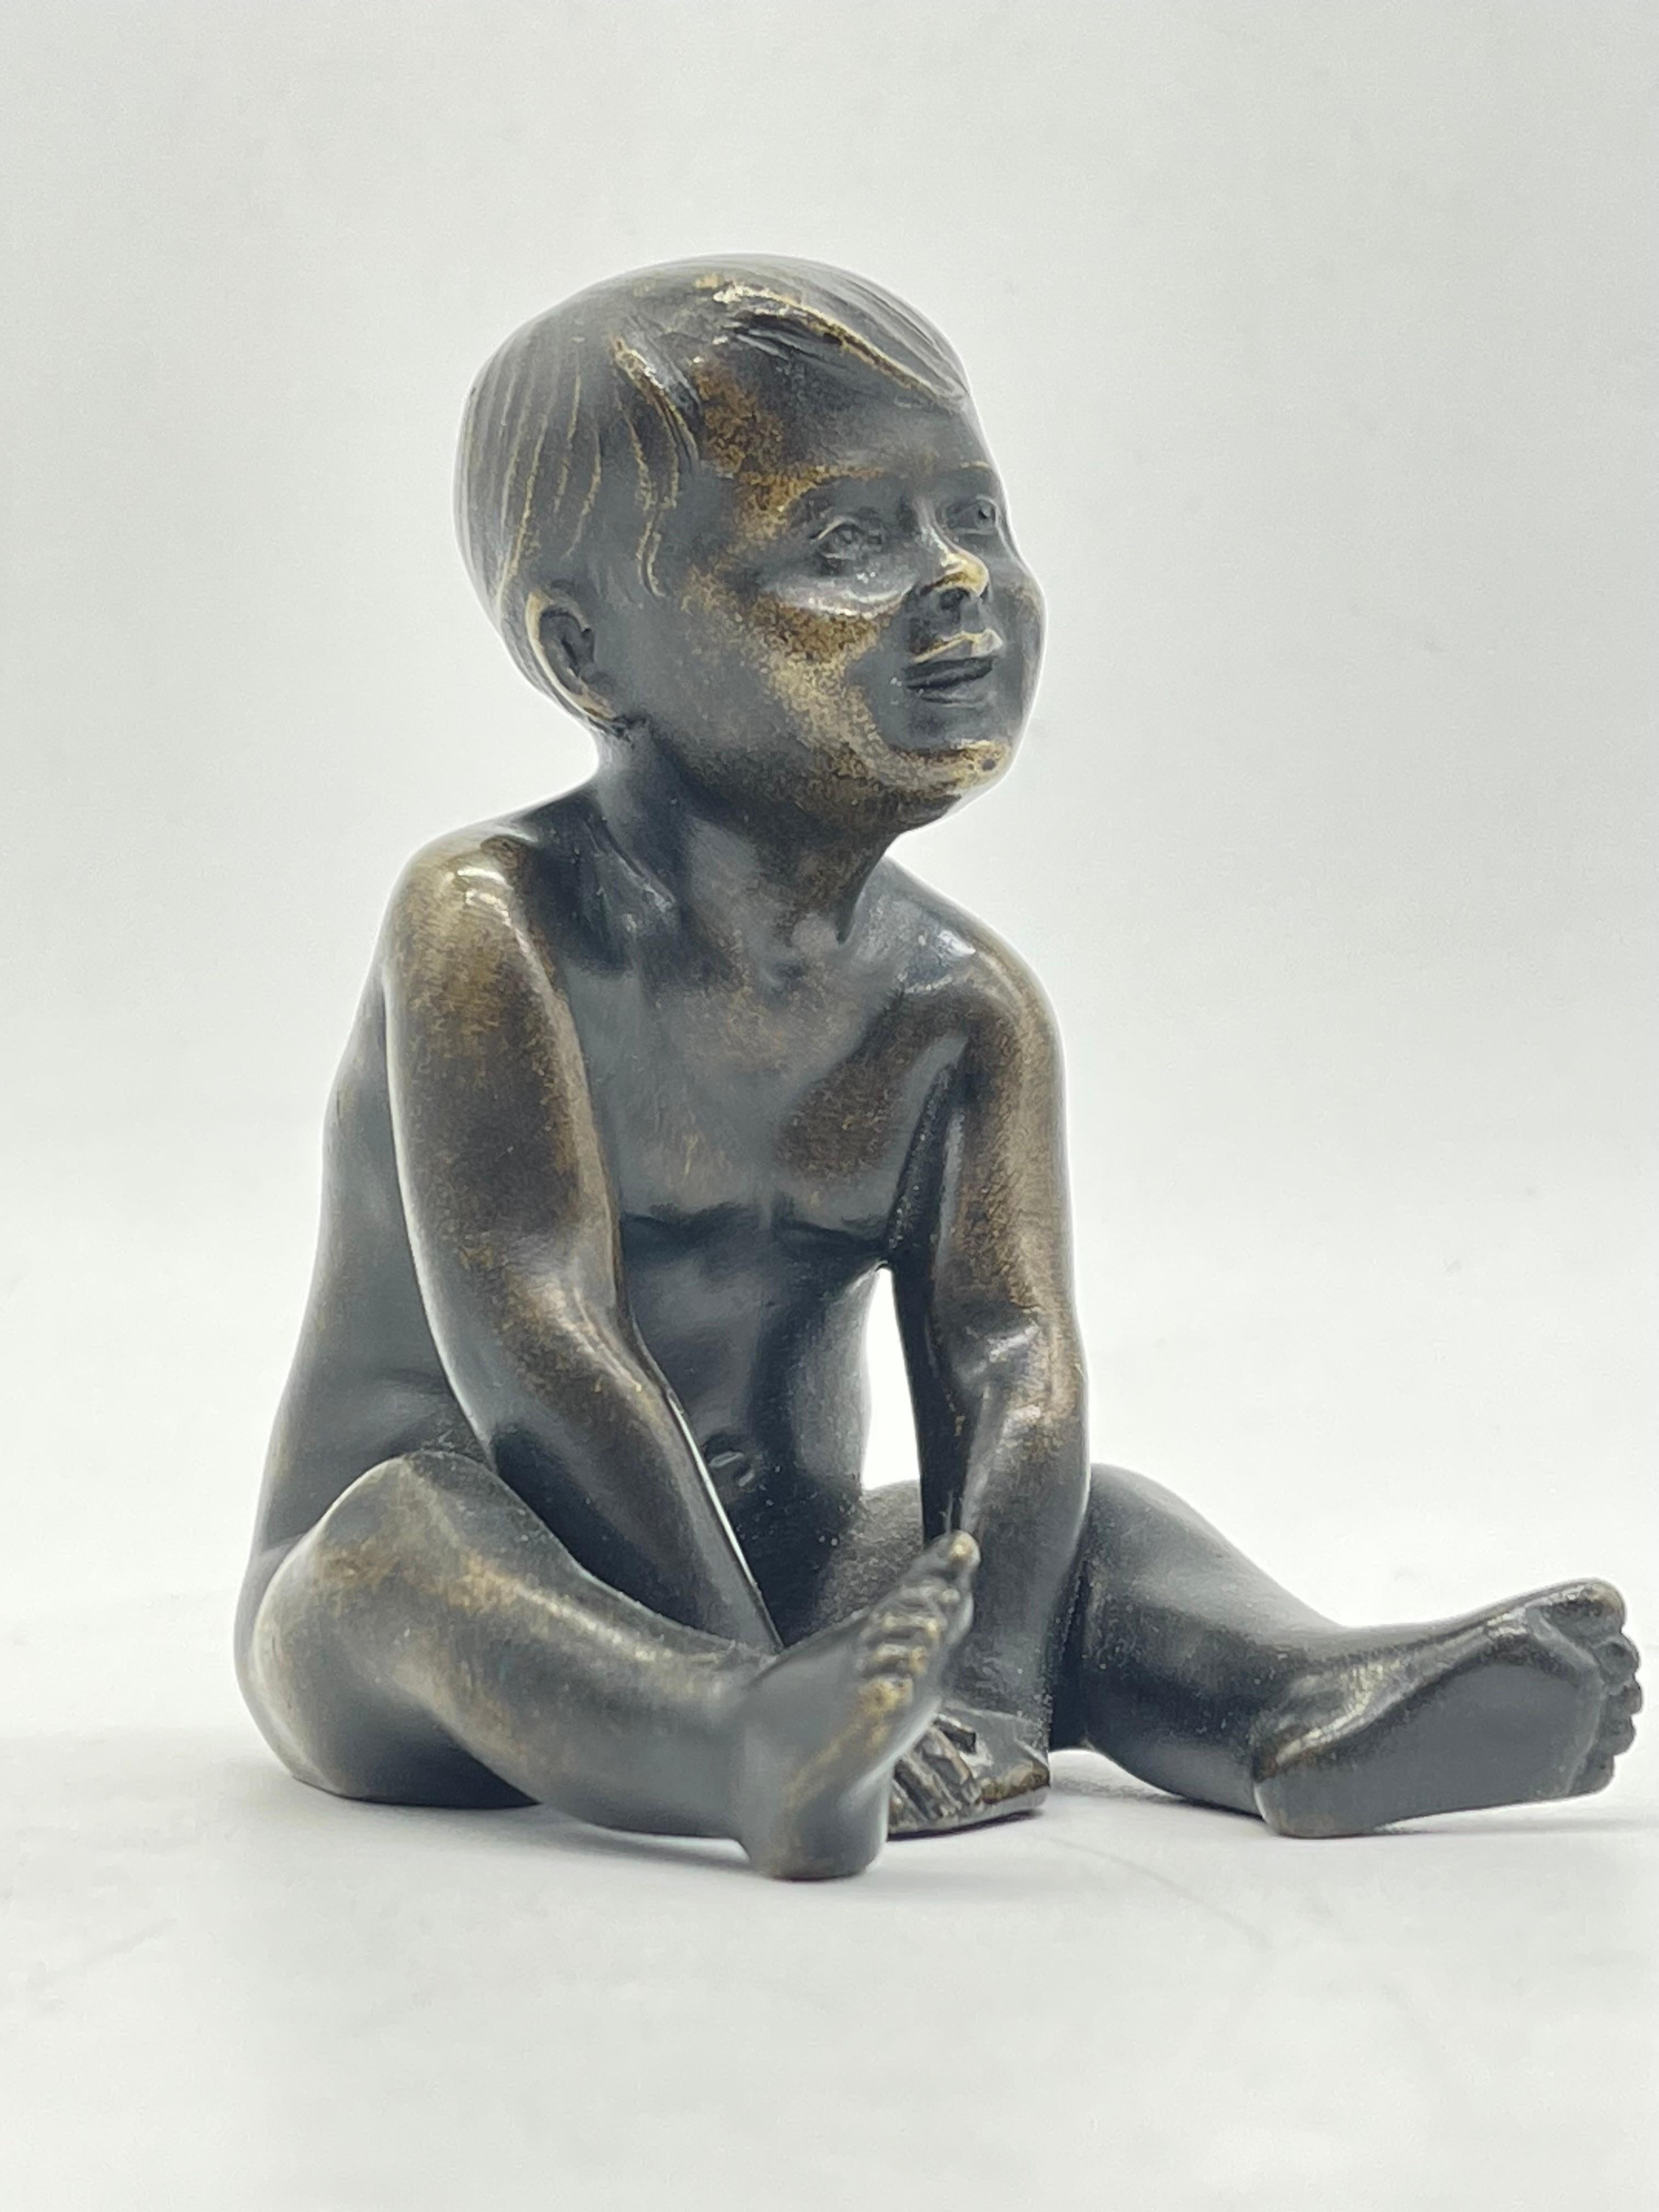 Sitzender kleiner Junge/Kinder aus massiver Bronzeskulptur/Figur aus dem 19. Jahrhundert

 Deutschland - massive Bronzeskulptur.

Der Zustand ist auf den Bildern zu sehen.